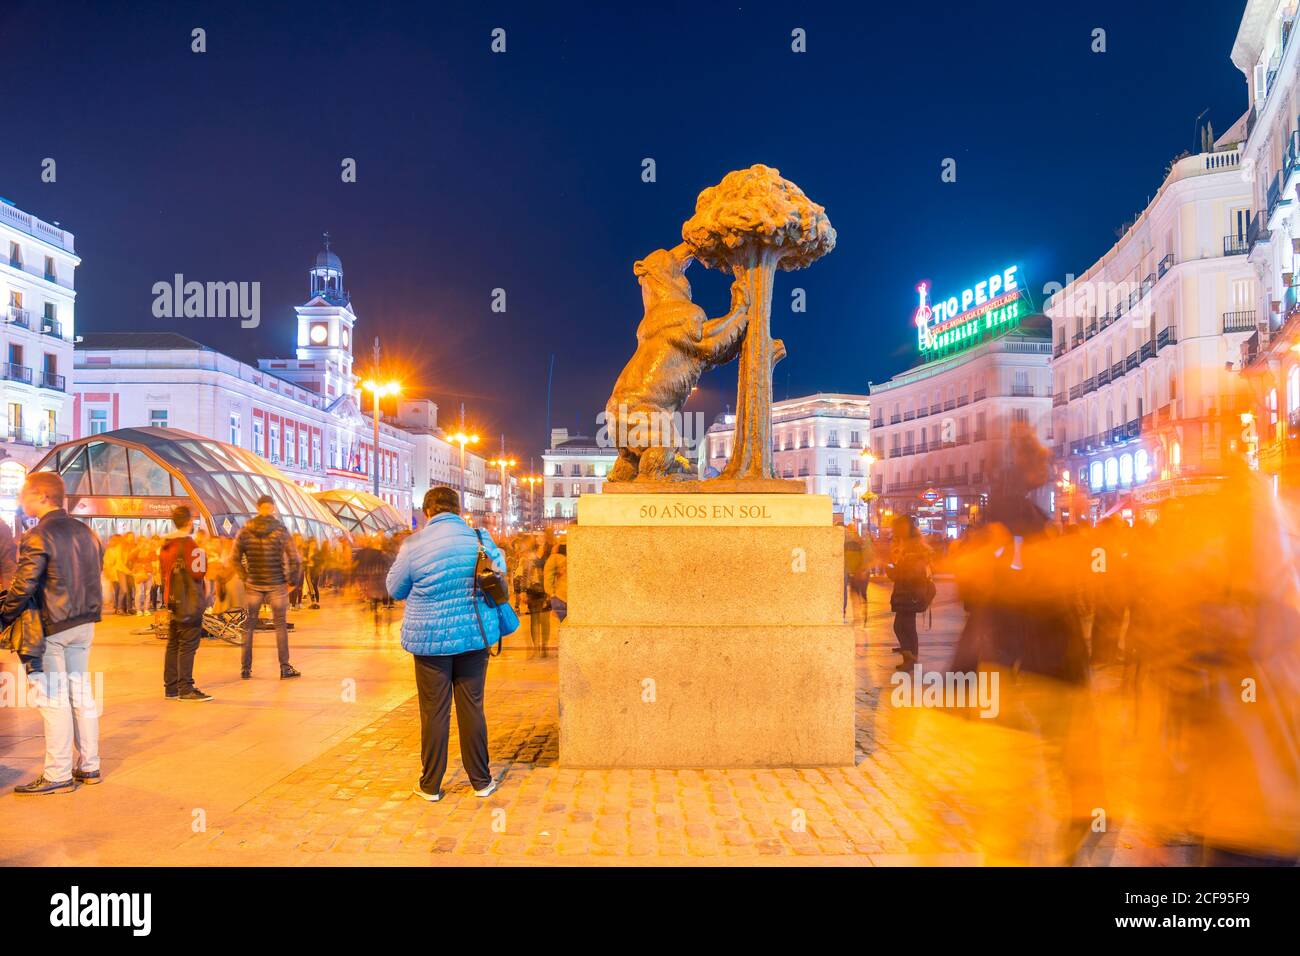 Madrid, Spanien - 19. Dezember 2018: Bärenskulptur und Arbutus auf dem Platz Puerta del Sol mit nächtlicher Beleuchtung und Spaziergängen Stockfoto